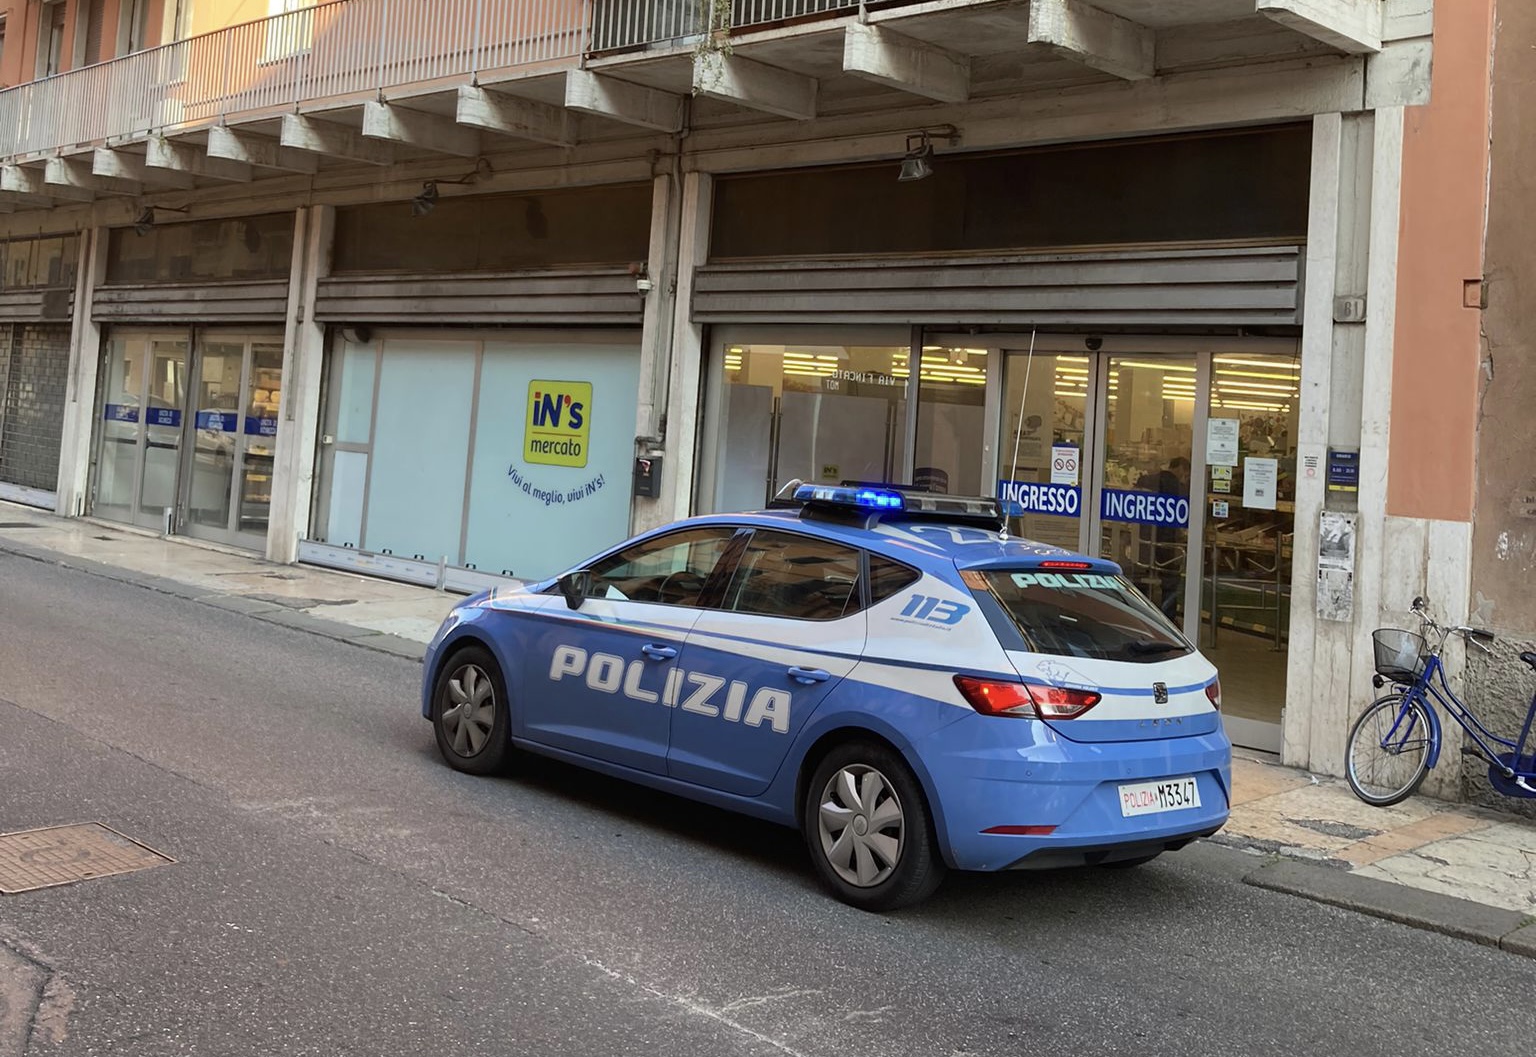 Minaccia con una spranga i dipendenti del supermercato IN’S di via XX settembre: trentaseienne arrestato dalla Polizia. Nello zaino, più di 200 euro di refurtiva.